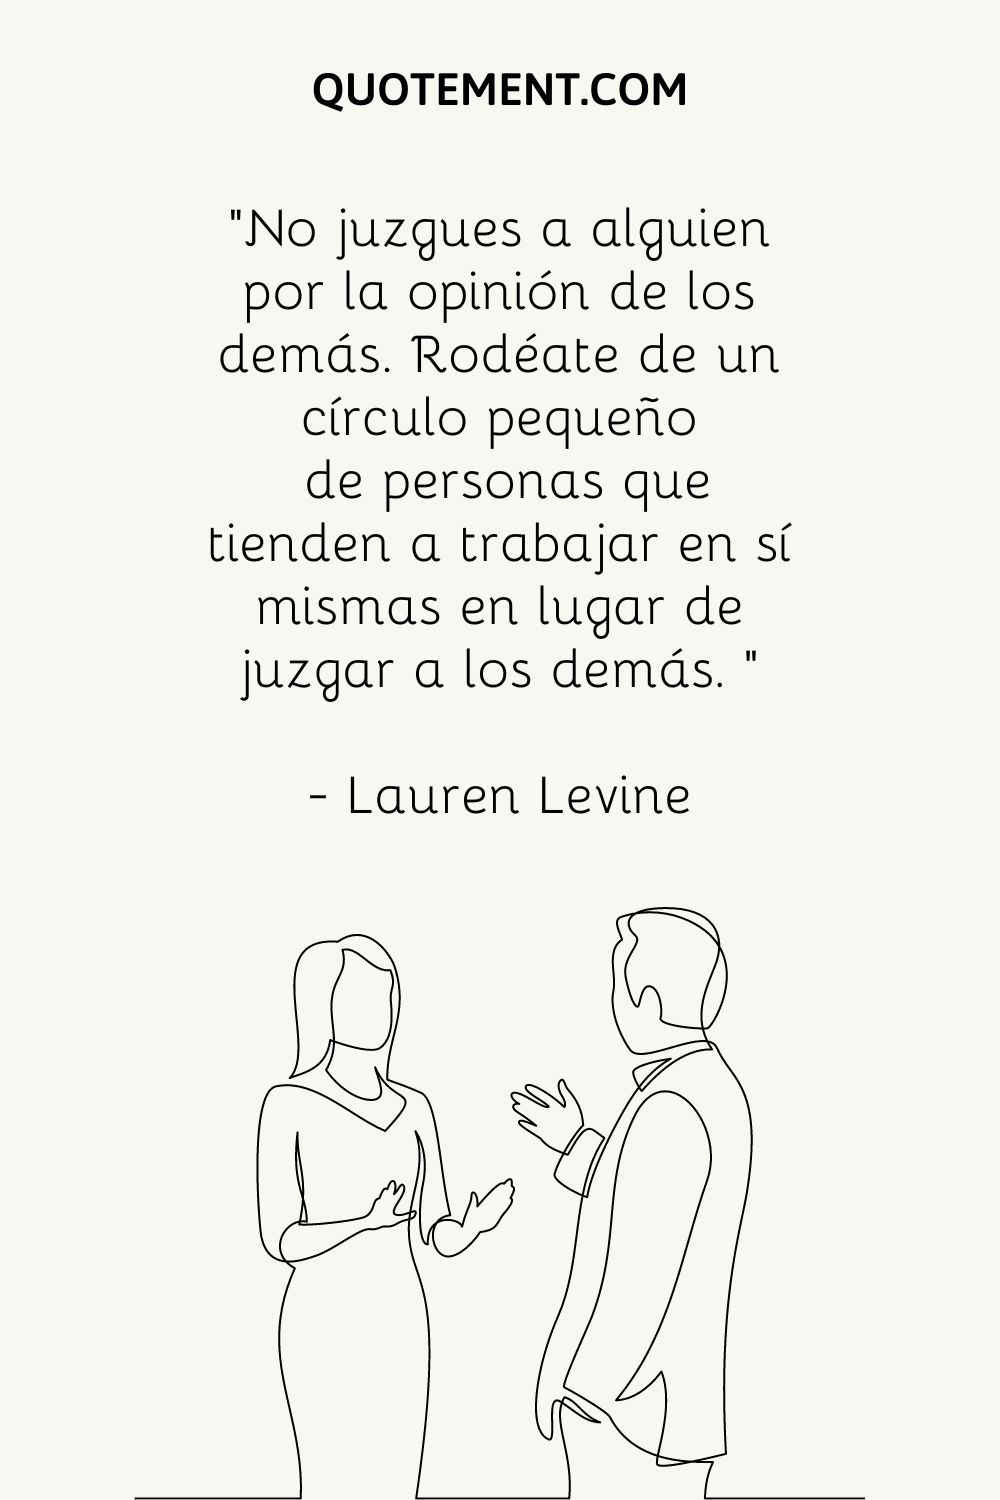 "No juzgues a nadie por la opinión de los demás. Rodéate de un pequeño círculo de personas que tiendan a trabajar en sí mismas en lugar de juzgar a los demás. " - Lauren Levine 